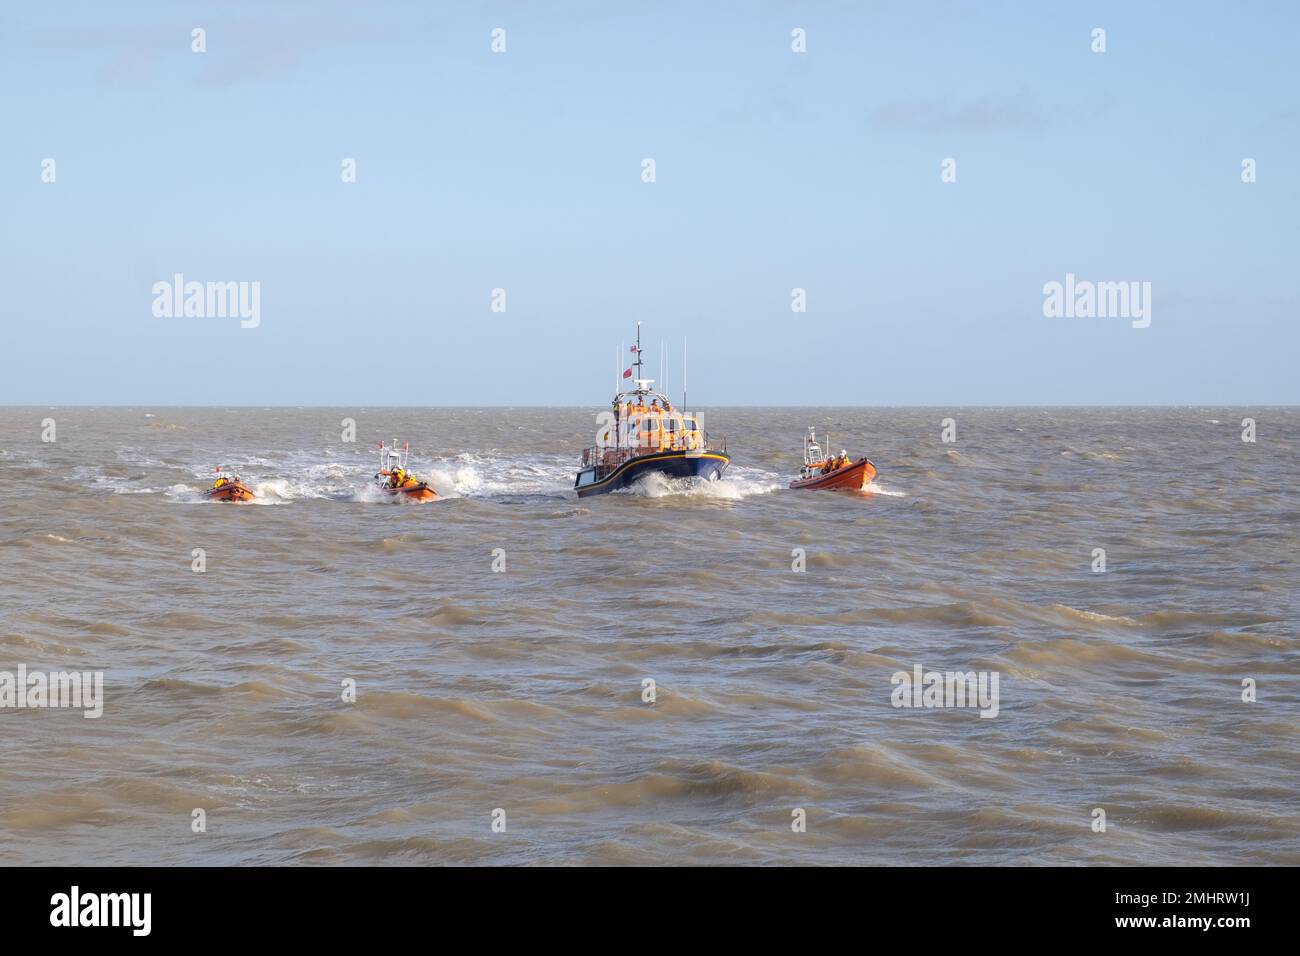 Four RNLI Lifeboats at sea, walton on the naze Stock Photo